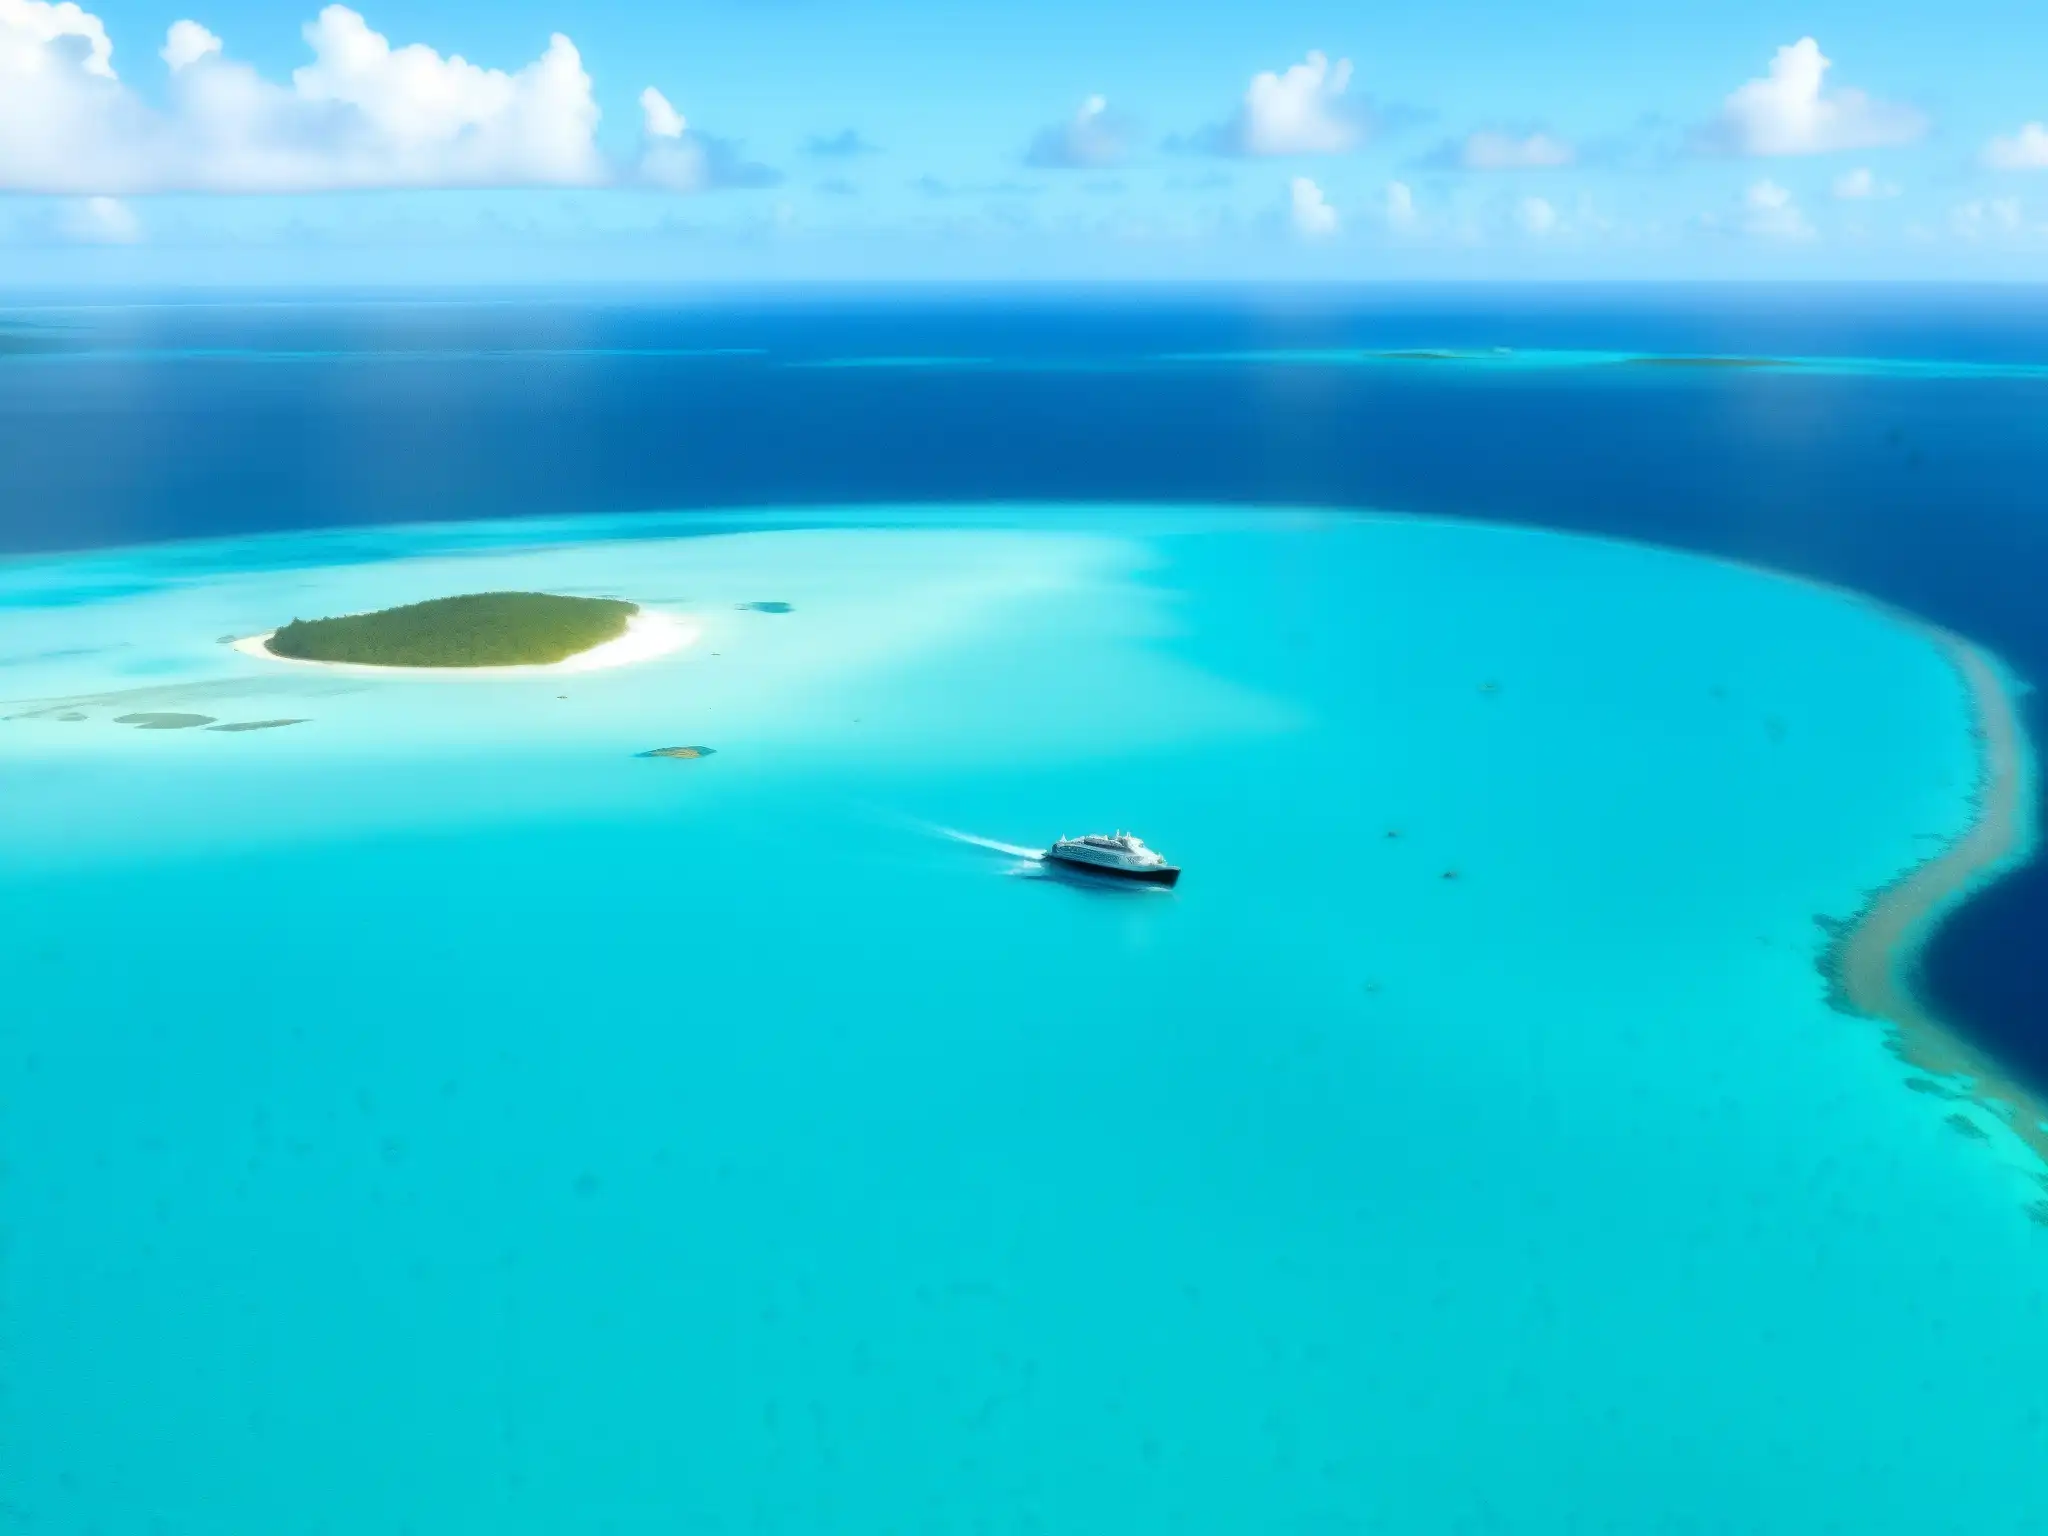 Vista aérea del misterioso Triángulo de las Bermudas con un barco solitario en aguas turquesas, añadiendo escala y perspectiva al enigmático escenario